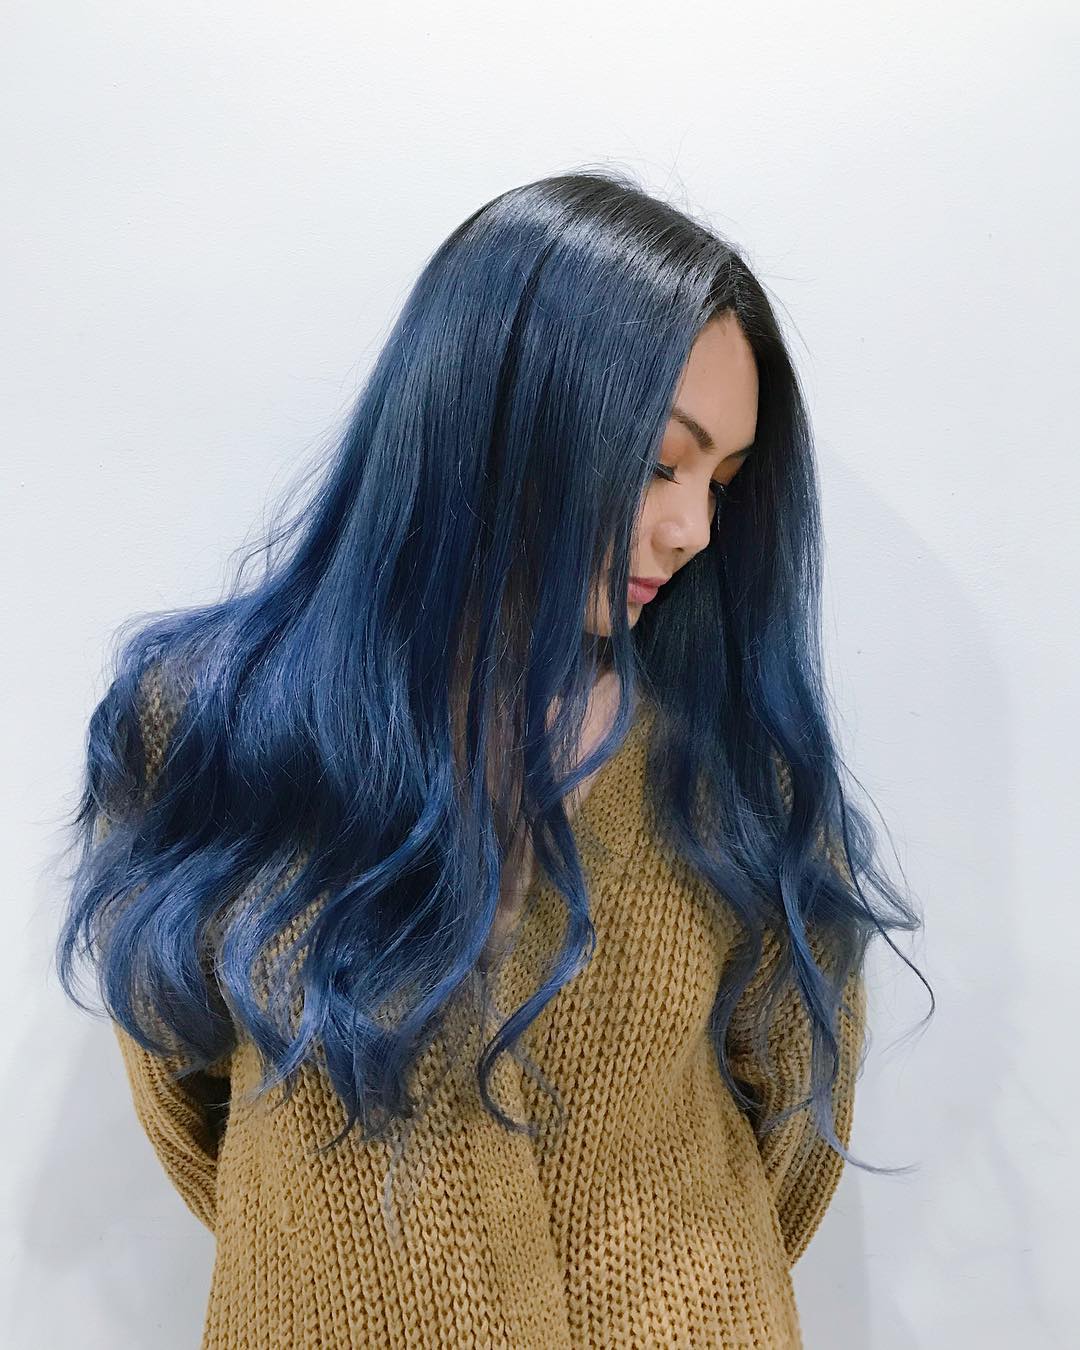 Tóc nhuộm xanh: Màu xanh đầy mạnh mẽ và đặc trưng, mang tới cho bạn sự nổi bật và khác biệt. Tóc nhuộm xanh giúp bạn thể hiện cá tính, sự mạnh mẽ và quyết đoán. Hãy xem hình ảnh để tìm nguồn cảm hứng và đưa mái tóc của bạn lên tầm cao mới.